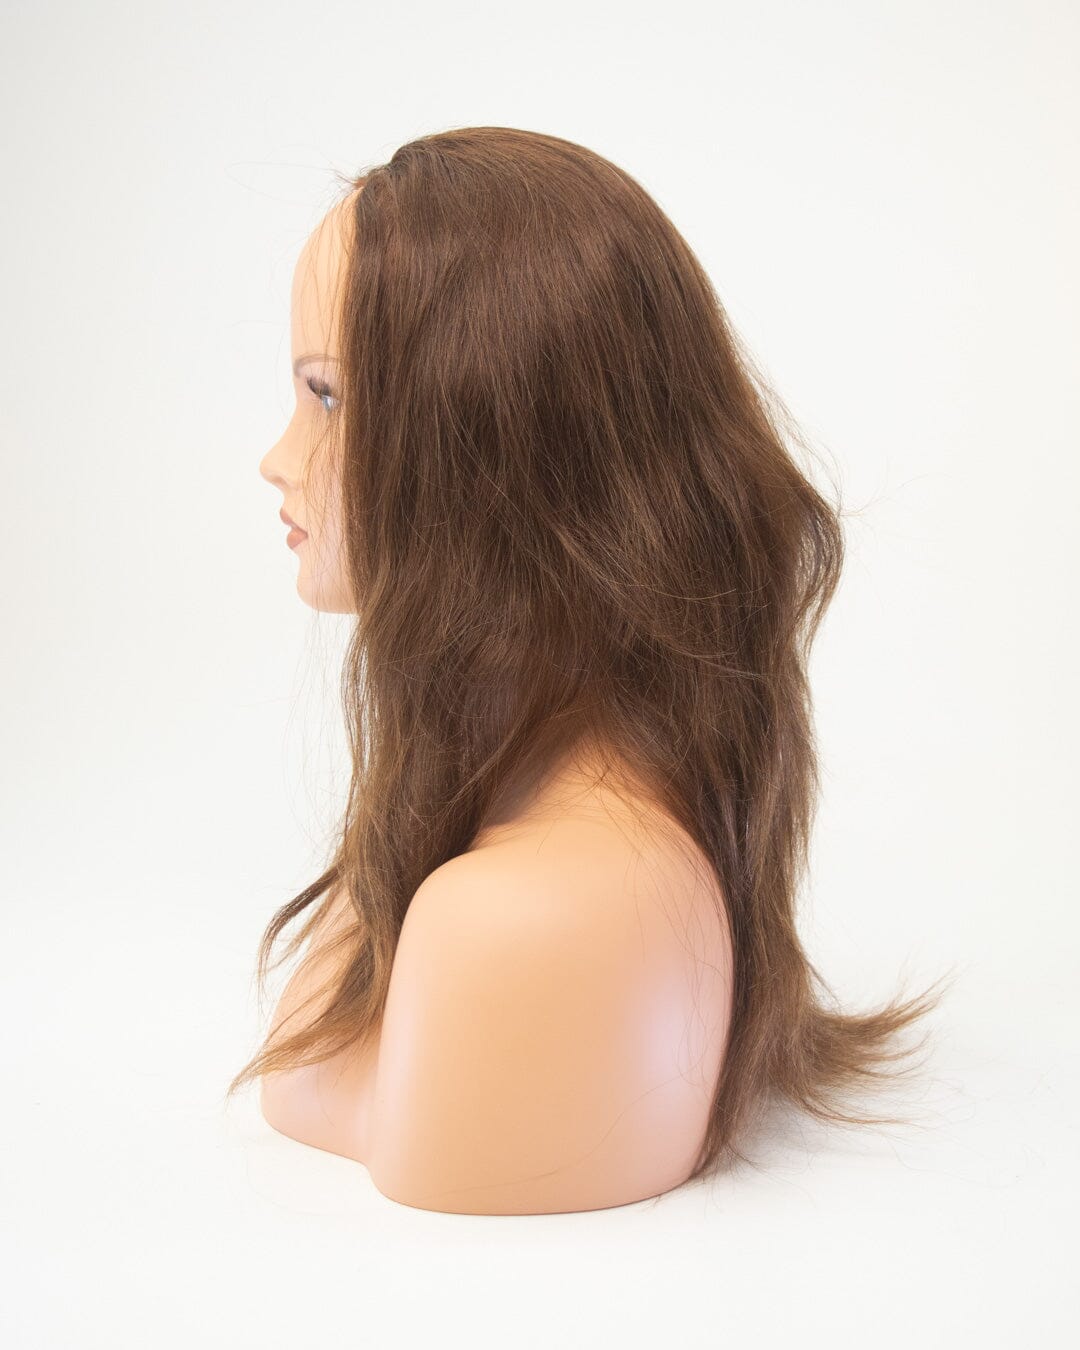 Medum Brown 60cm Human Hair Wig